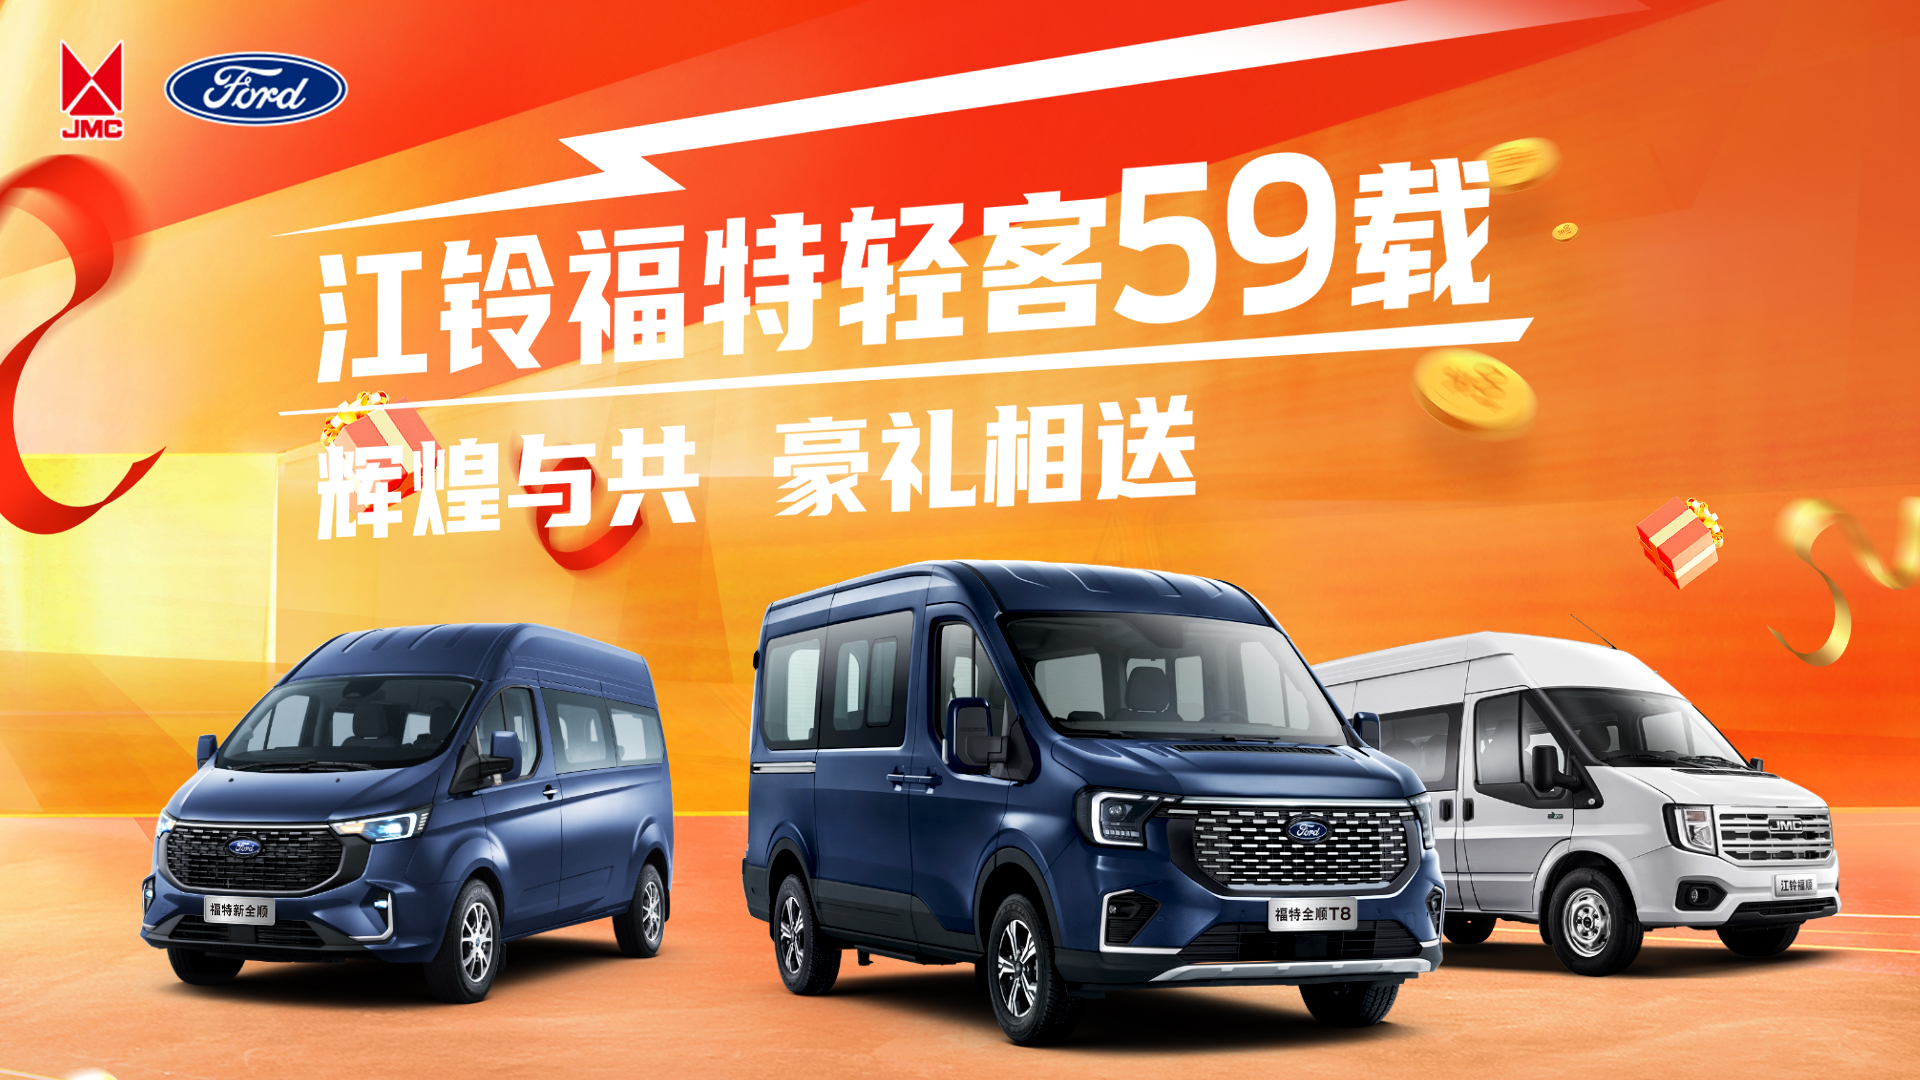 上海科达 专注江铃汽车销售服务25年